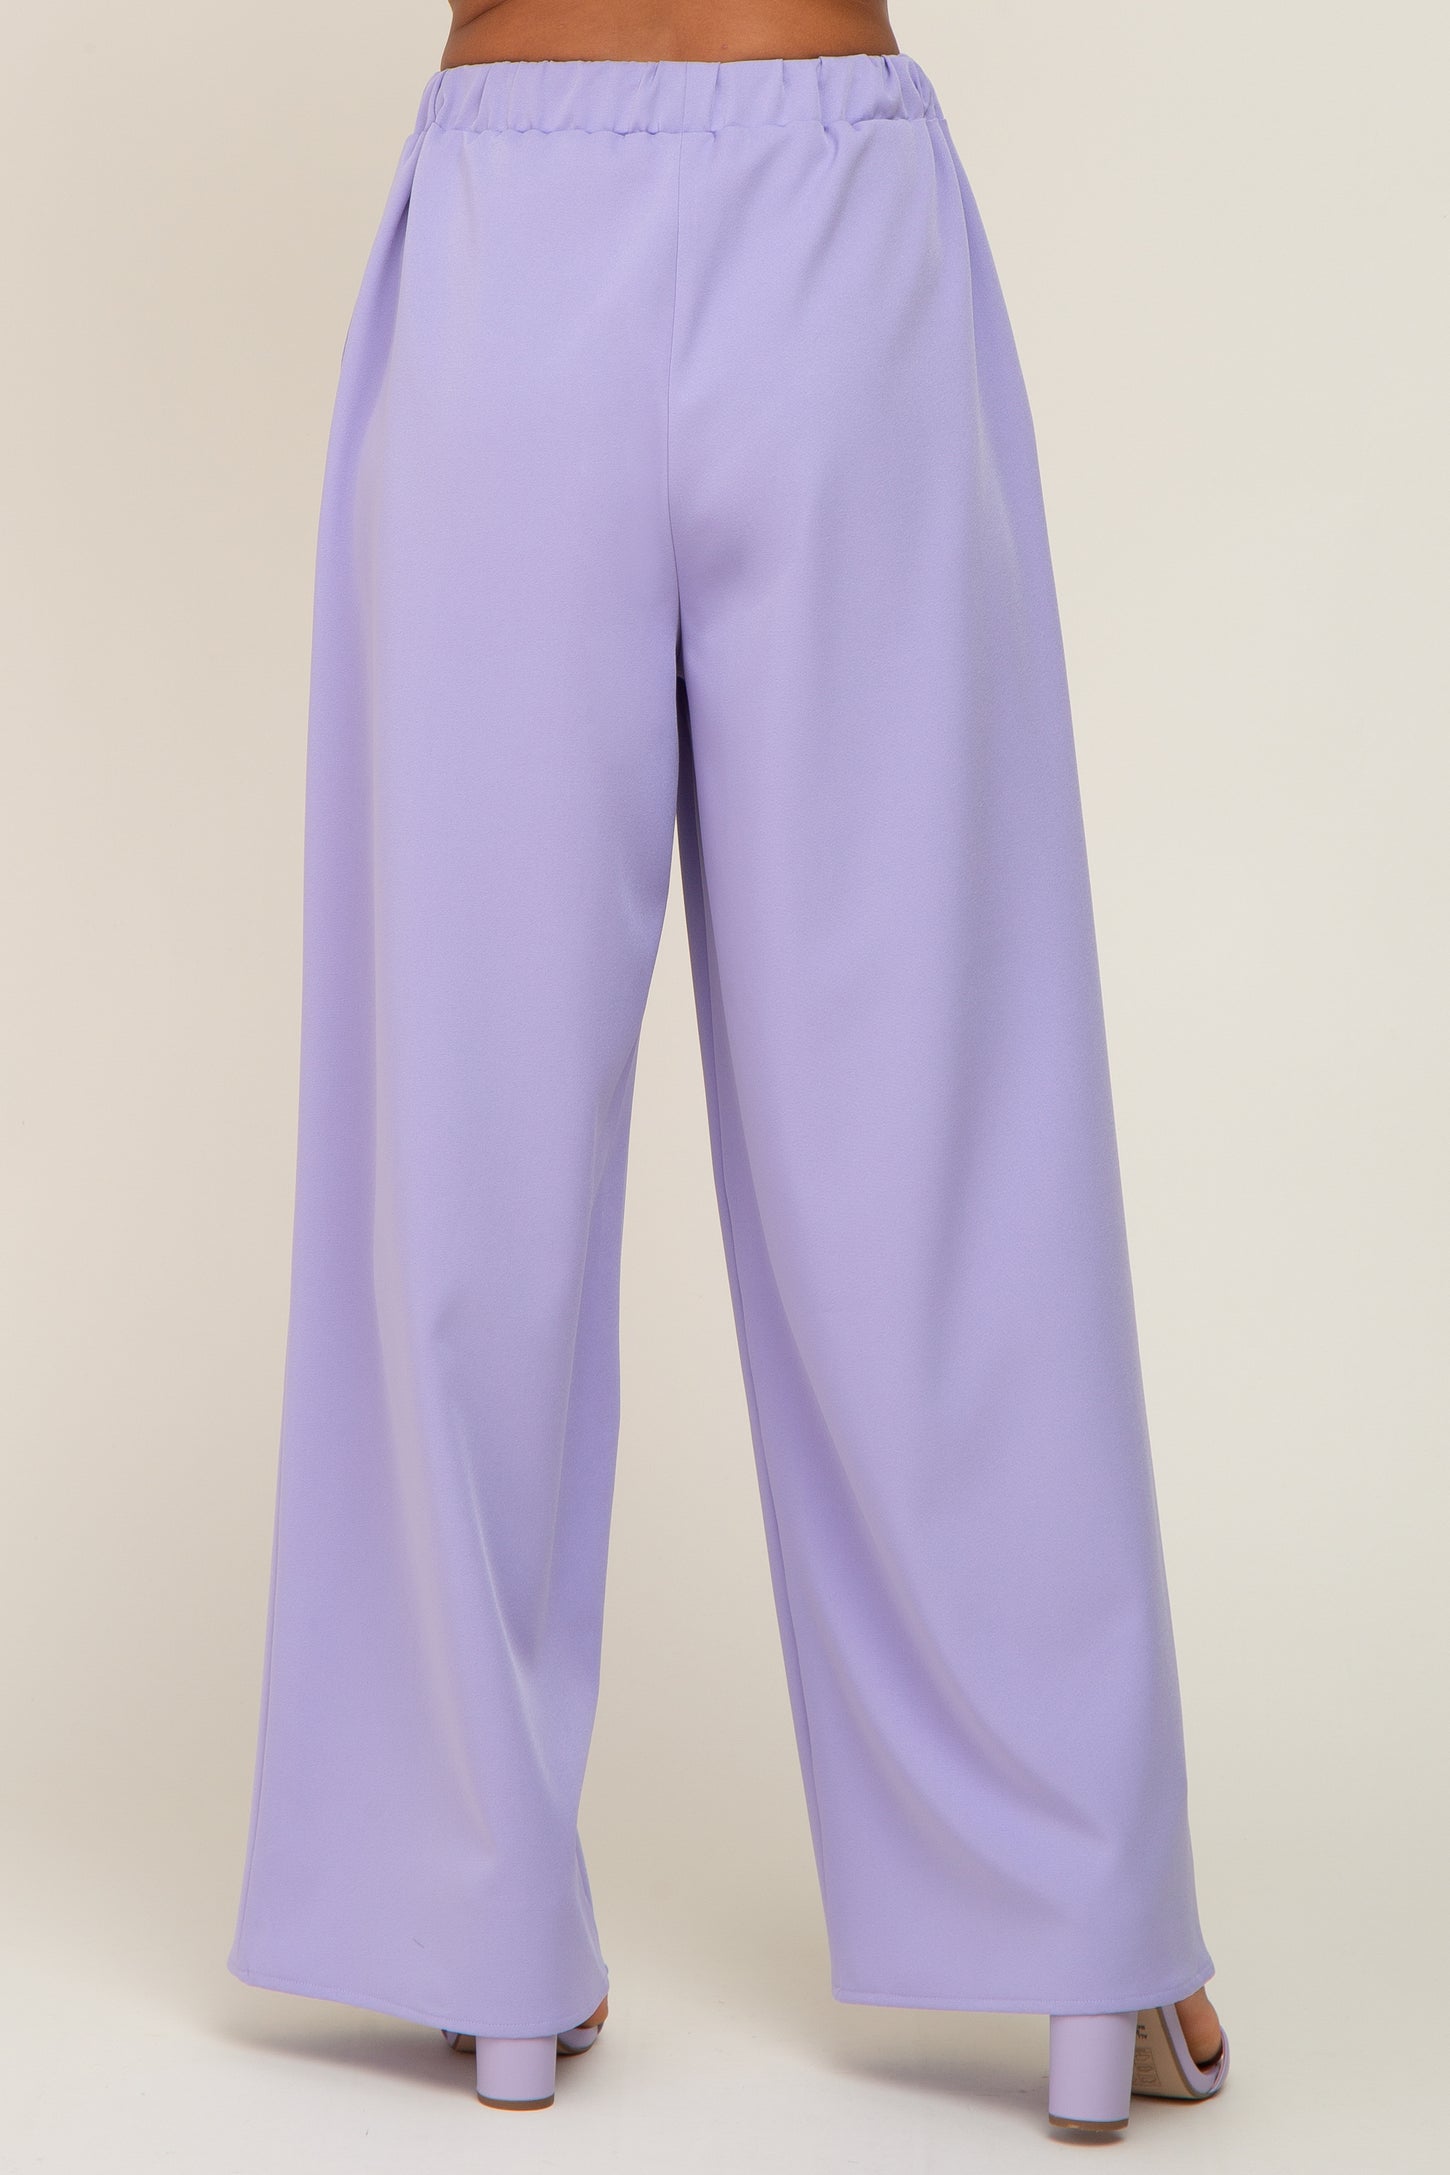 CHICJOC Women Long Wide Leg 100% Viscose Pants size 38 in Lavender - Pants  & Jumpsuits